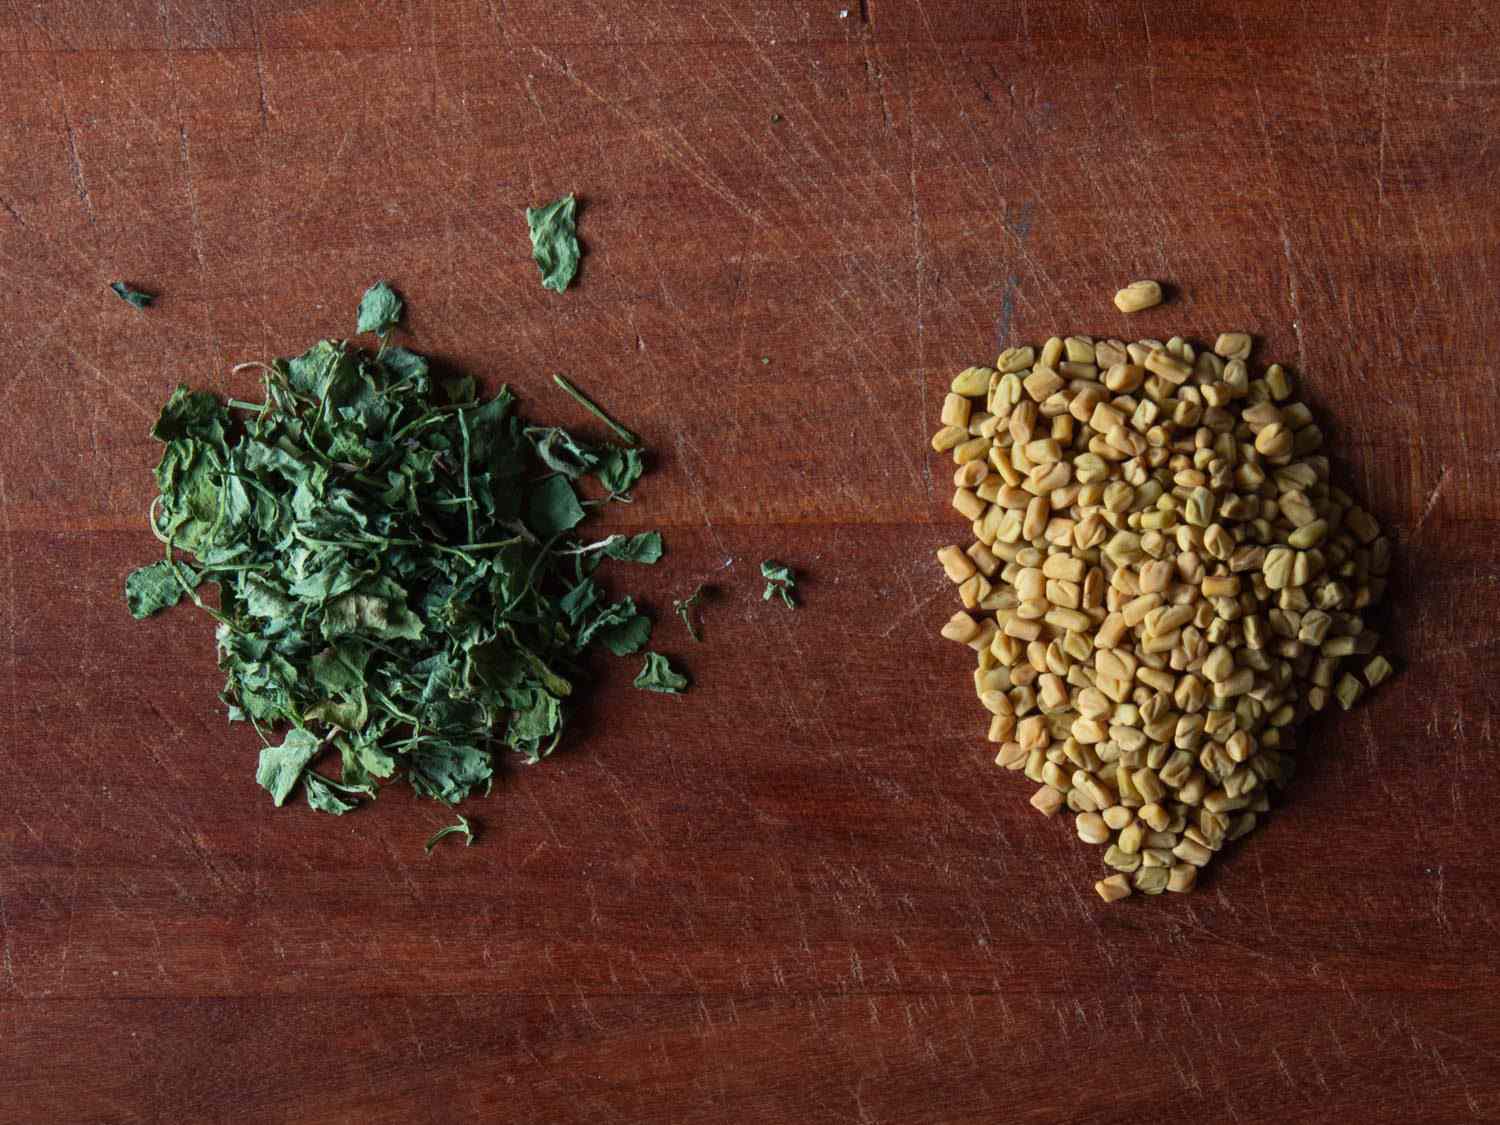 胡芦巴叶子(左)和胡芦巴种子(右)的对比